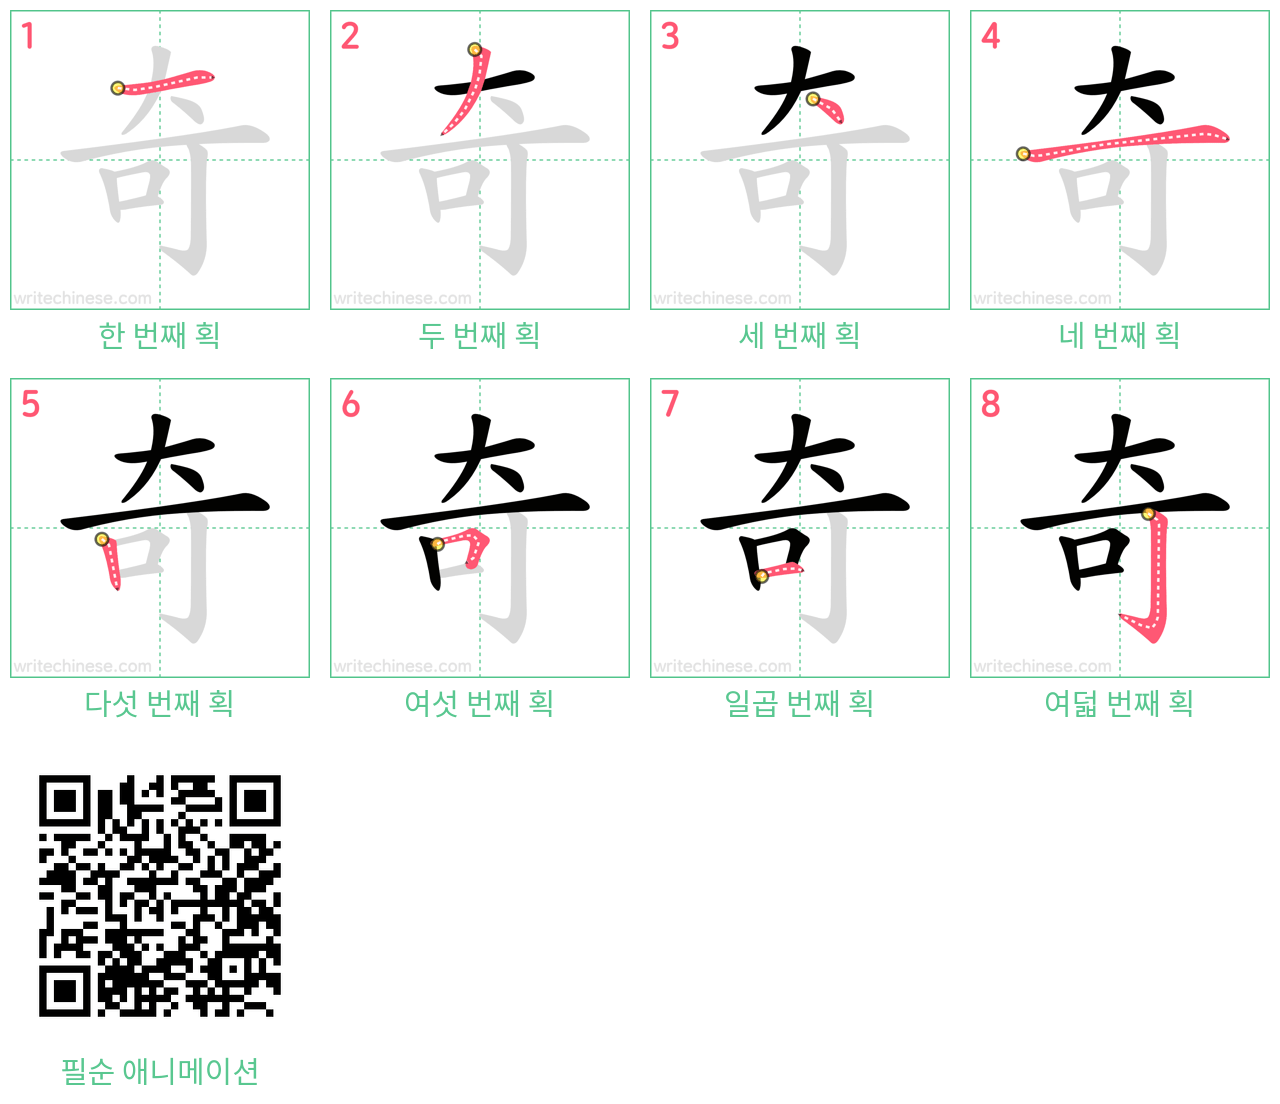 奇 step-by-step stroke order diagrams